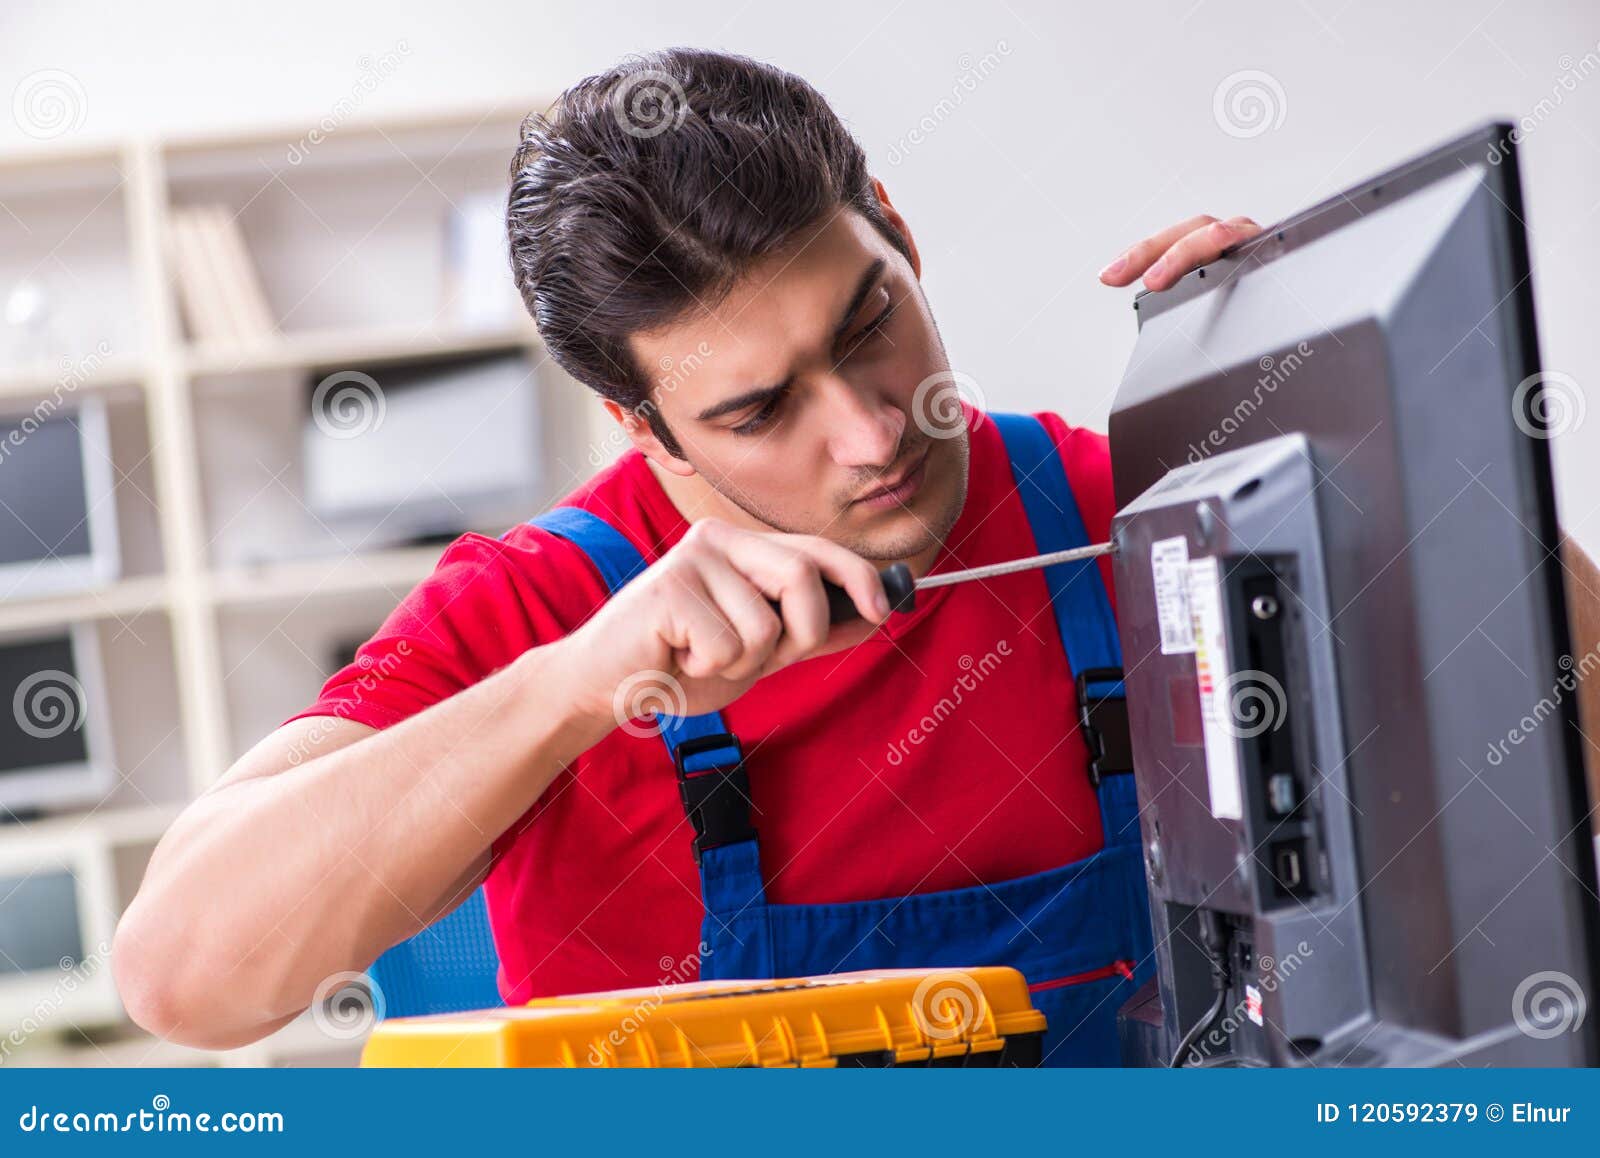 Repair things. Инженер. Человек ремонтирует компьютер. Чинить вещи. Мужчина чинит телевизор.